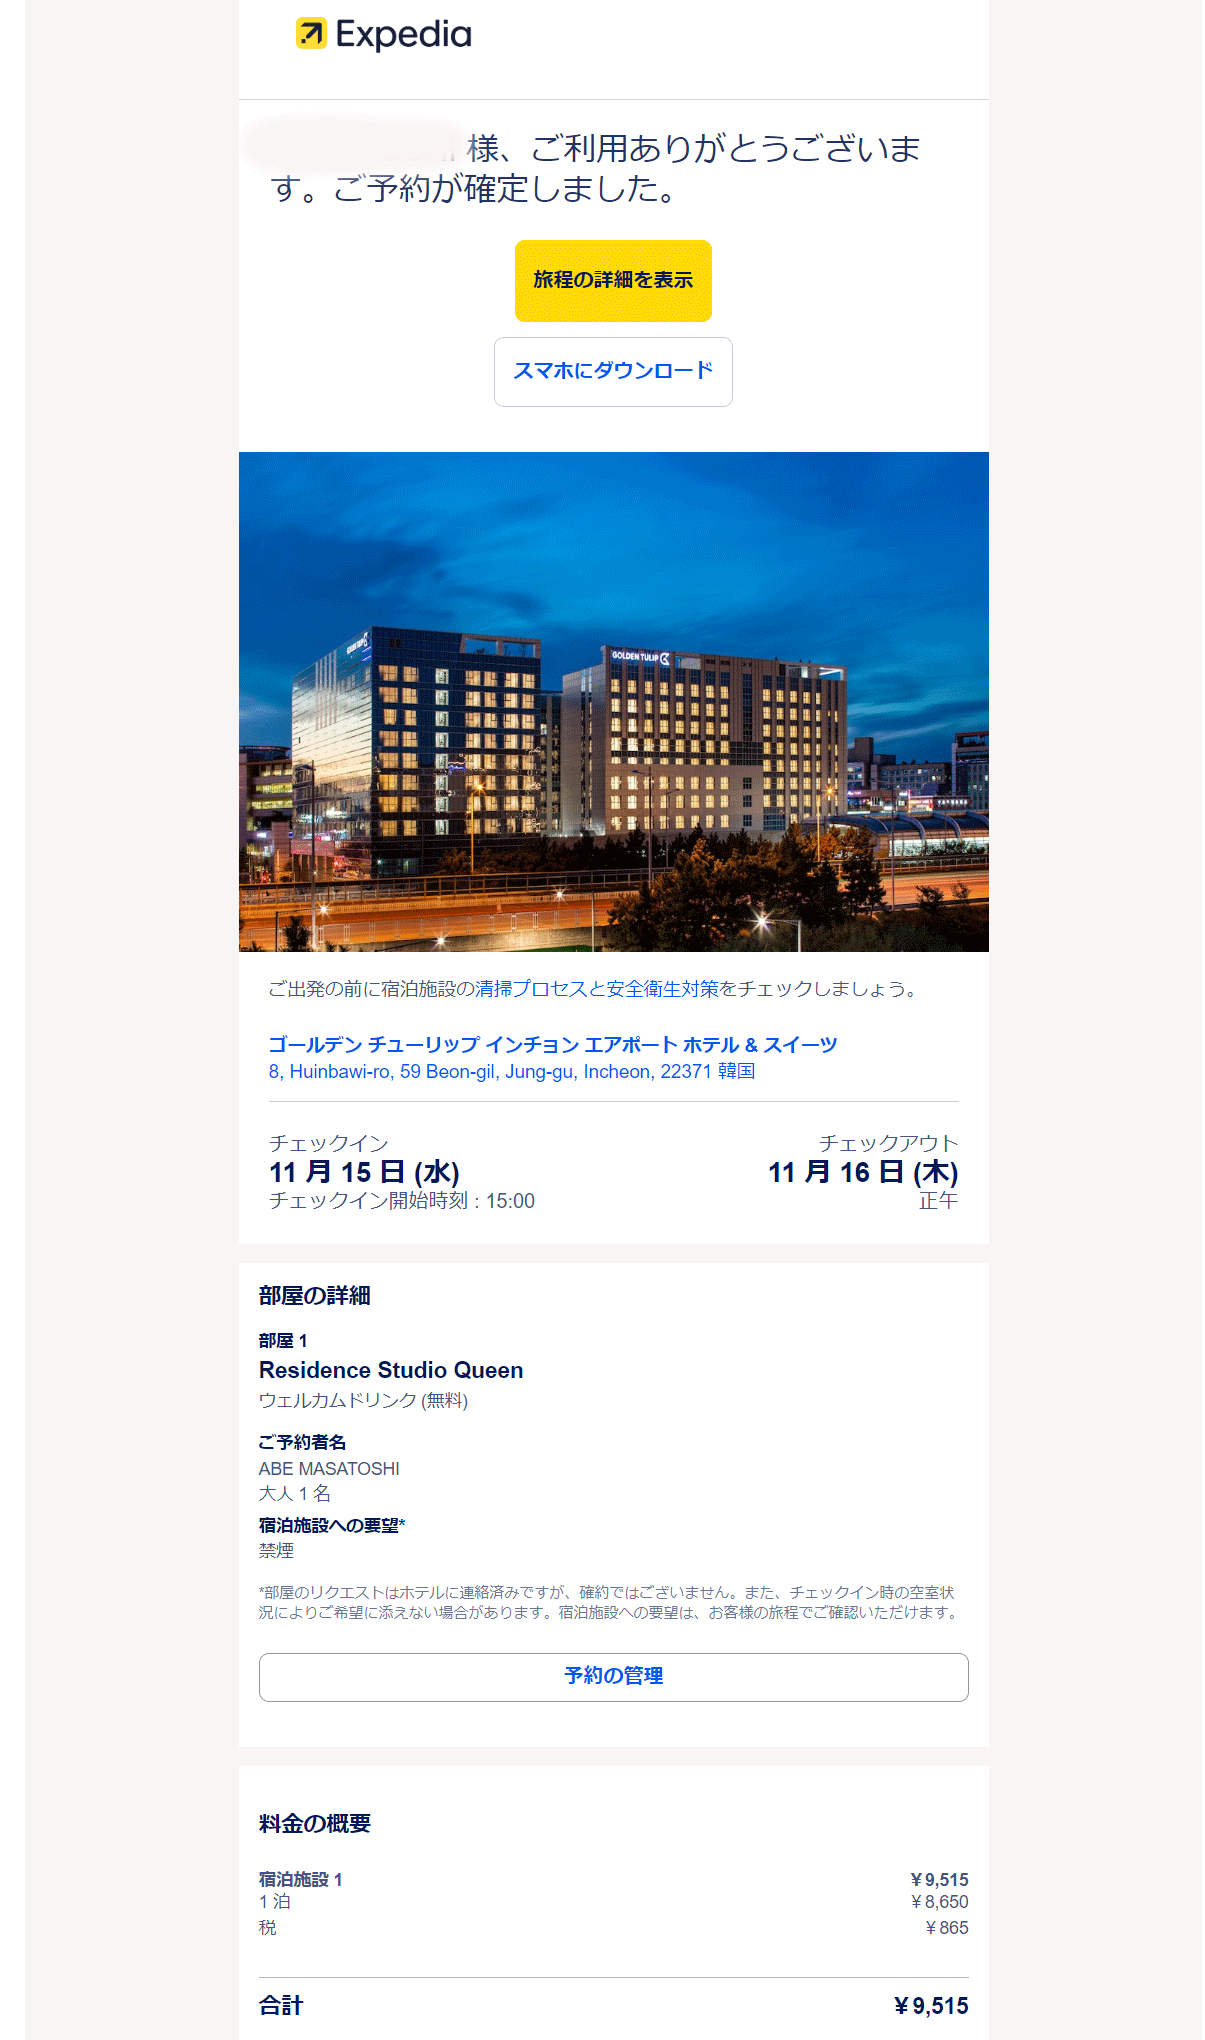 ゴールデン チューリップ 仁川エアポート ホテル 골든 튤립 인천공항 호텔&스위트